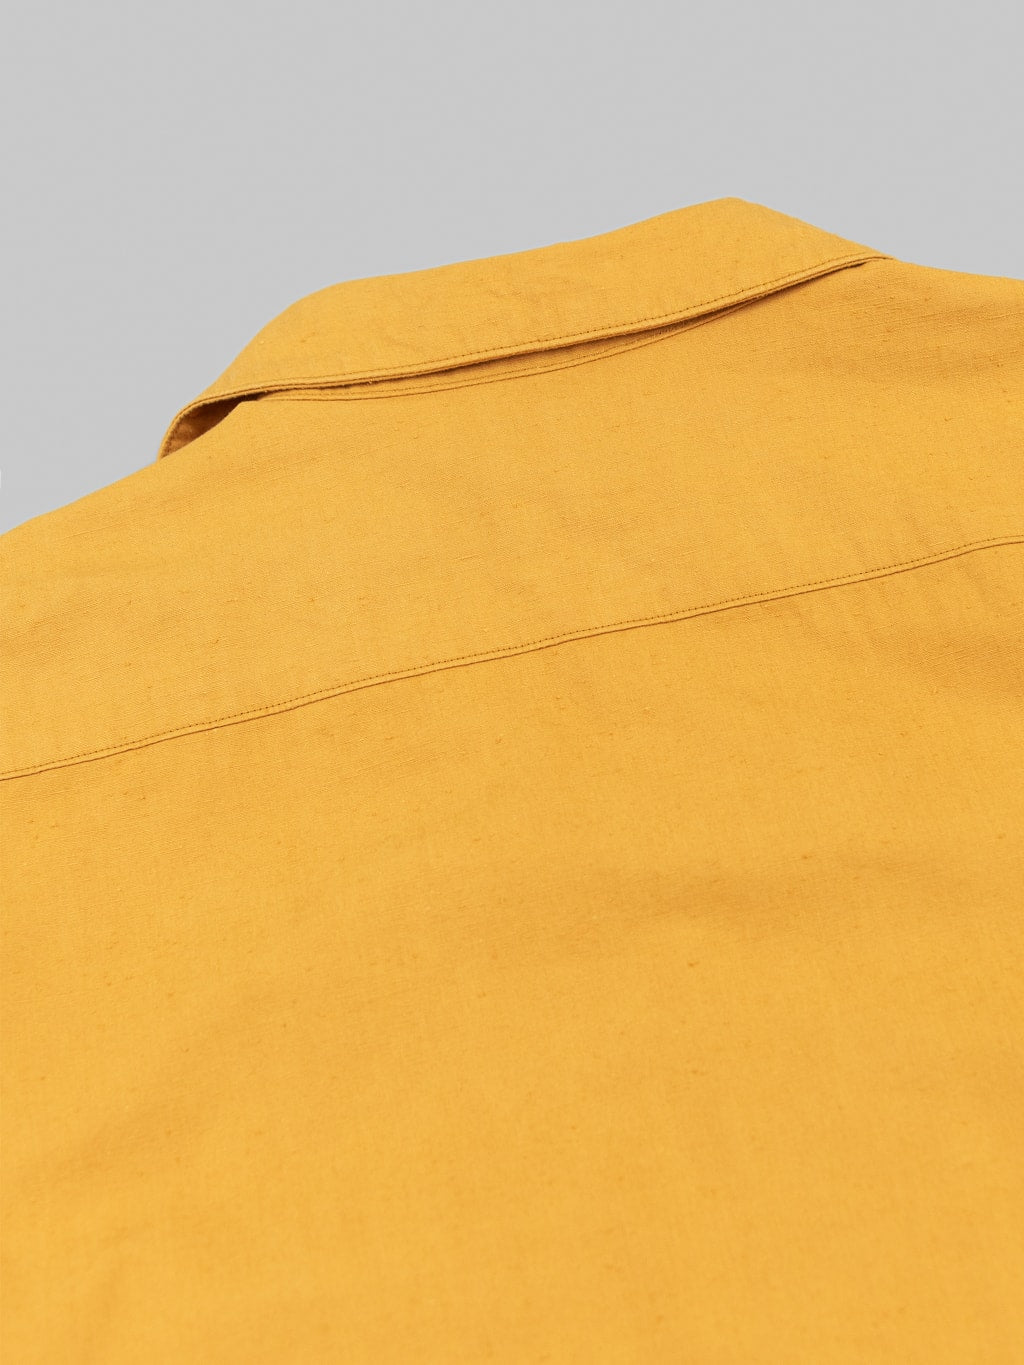 ues denim mechanic shirt sleeves shirt pumpkin yellow back collar